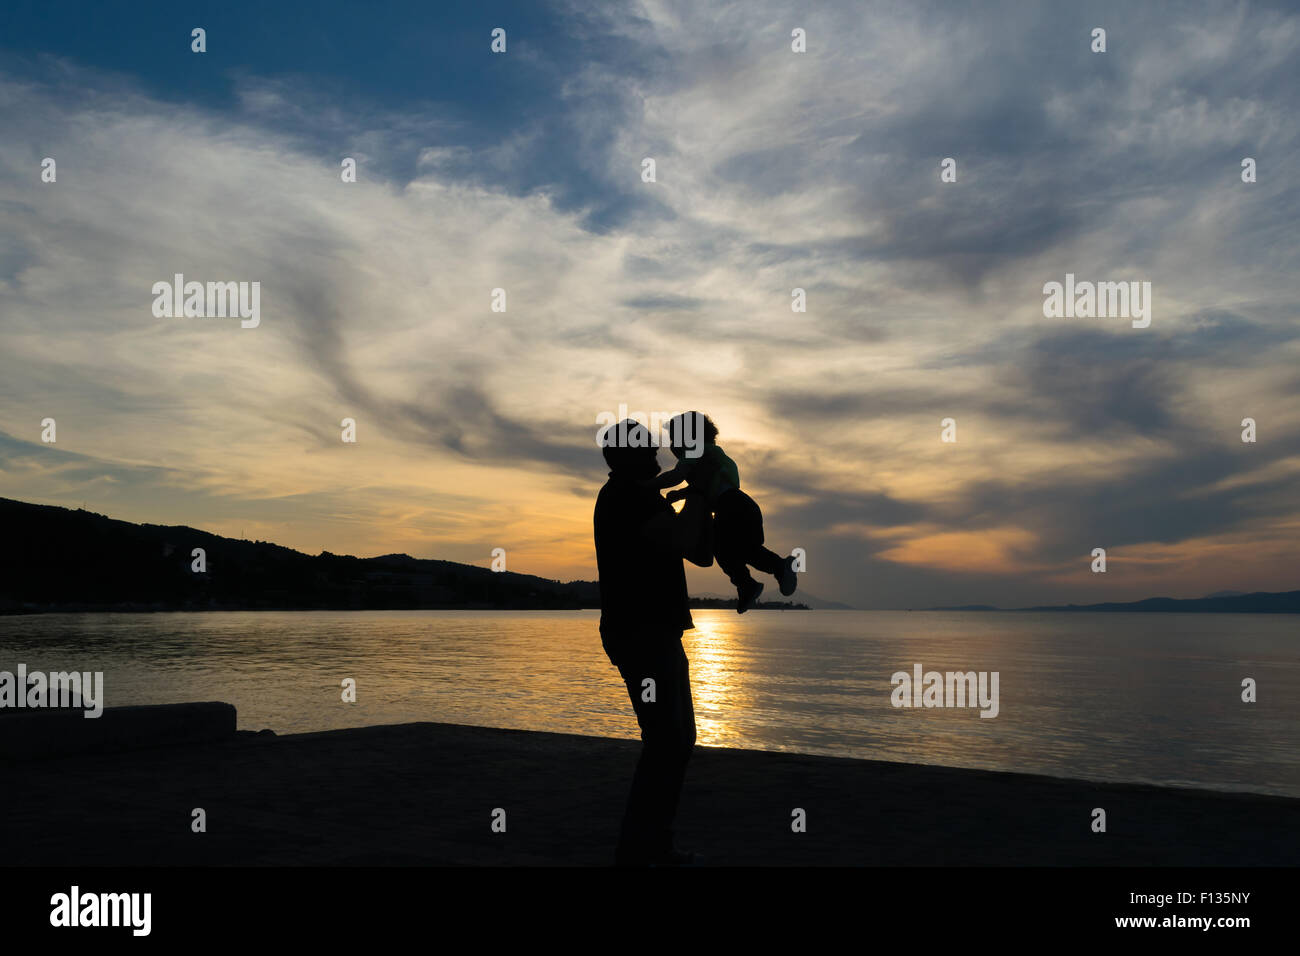 Vater und Sohn lieben Silhouette vor einem dramatischen Himmel. Stockfoto